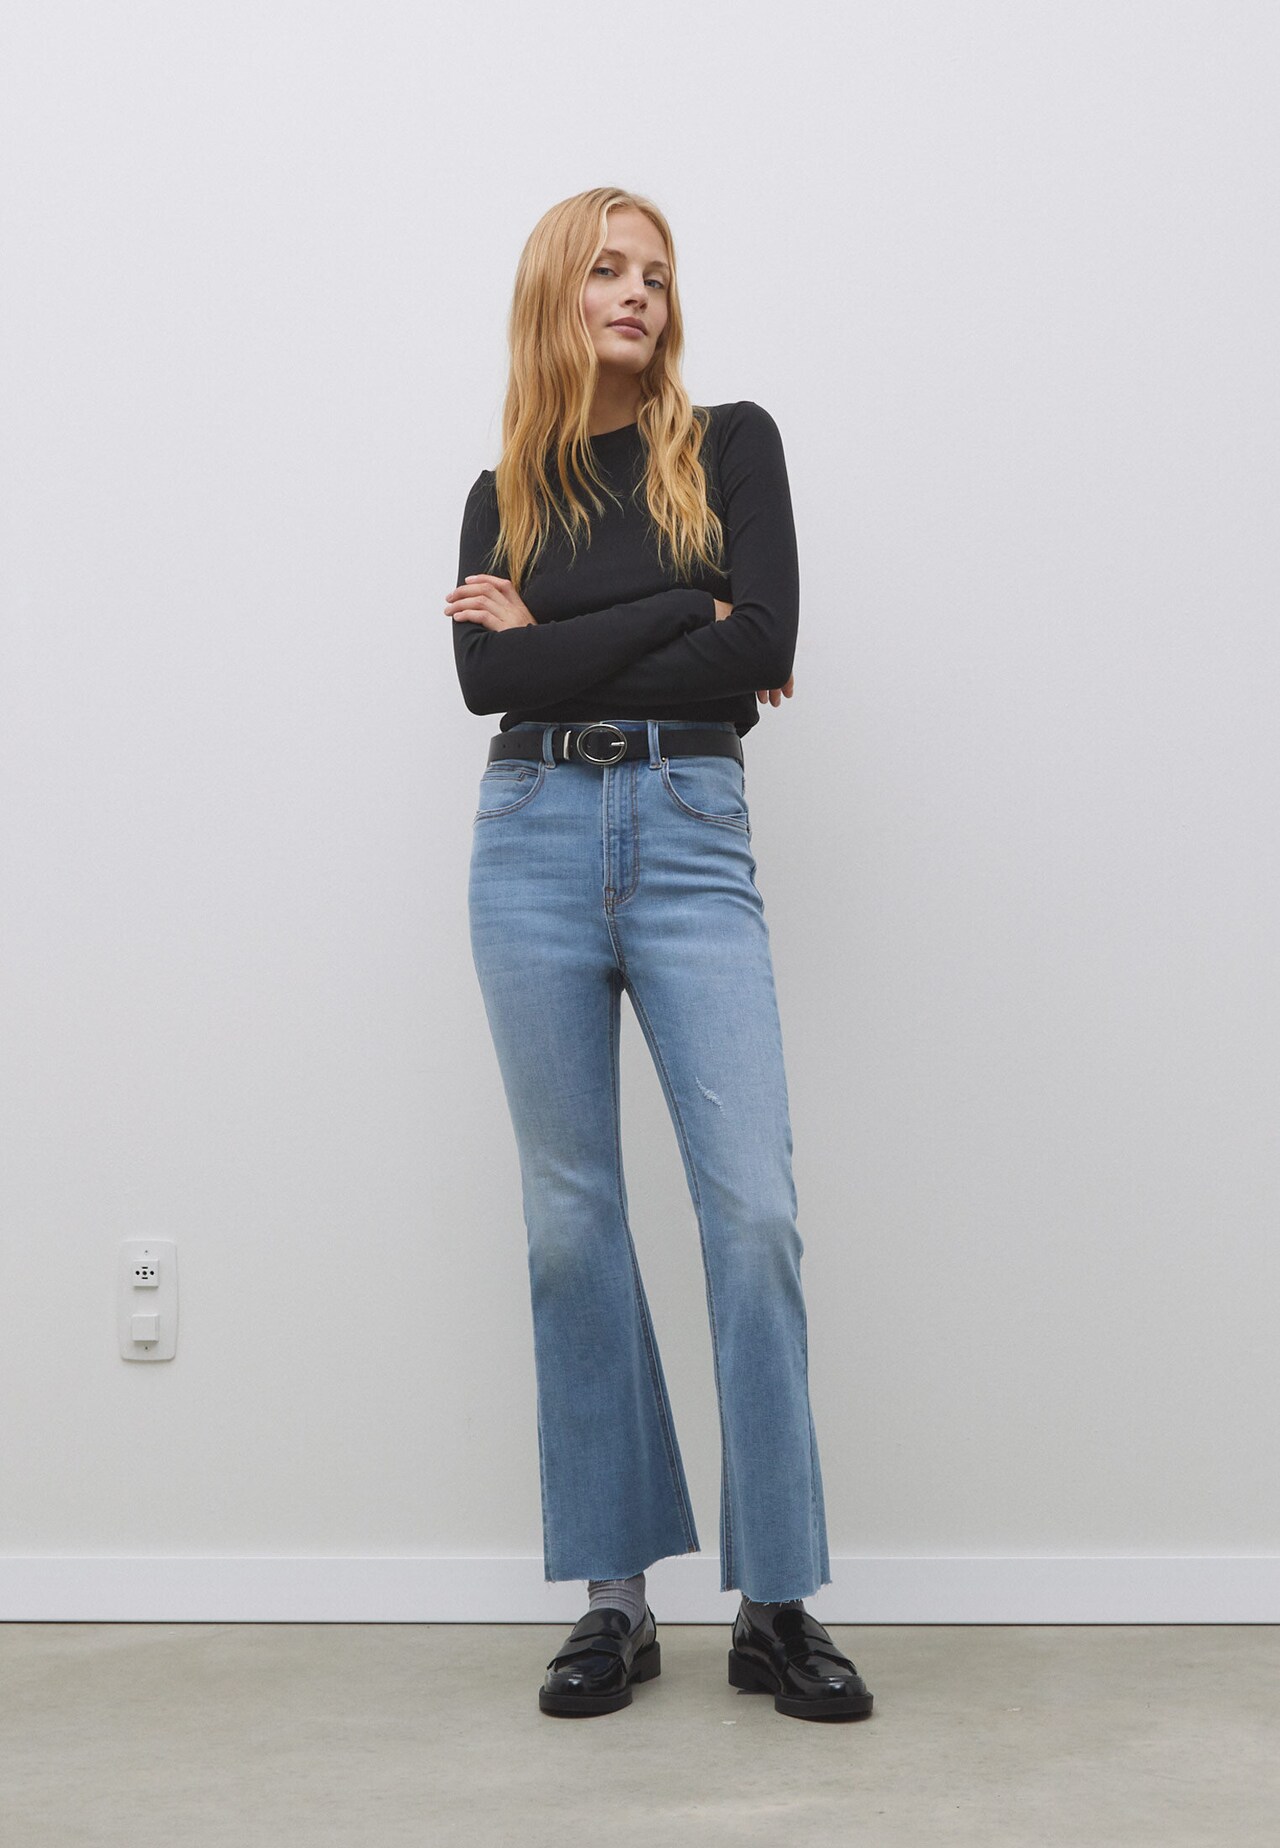 Thorny Sind Afskrække D78 cropped flared jeans - Women's fashion | Stradivarius United States